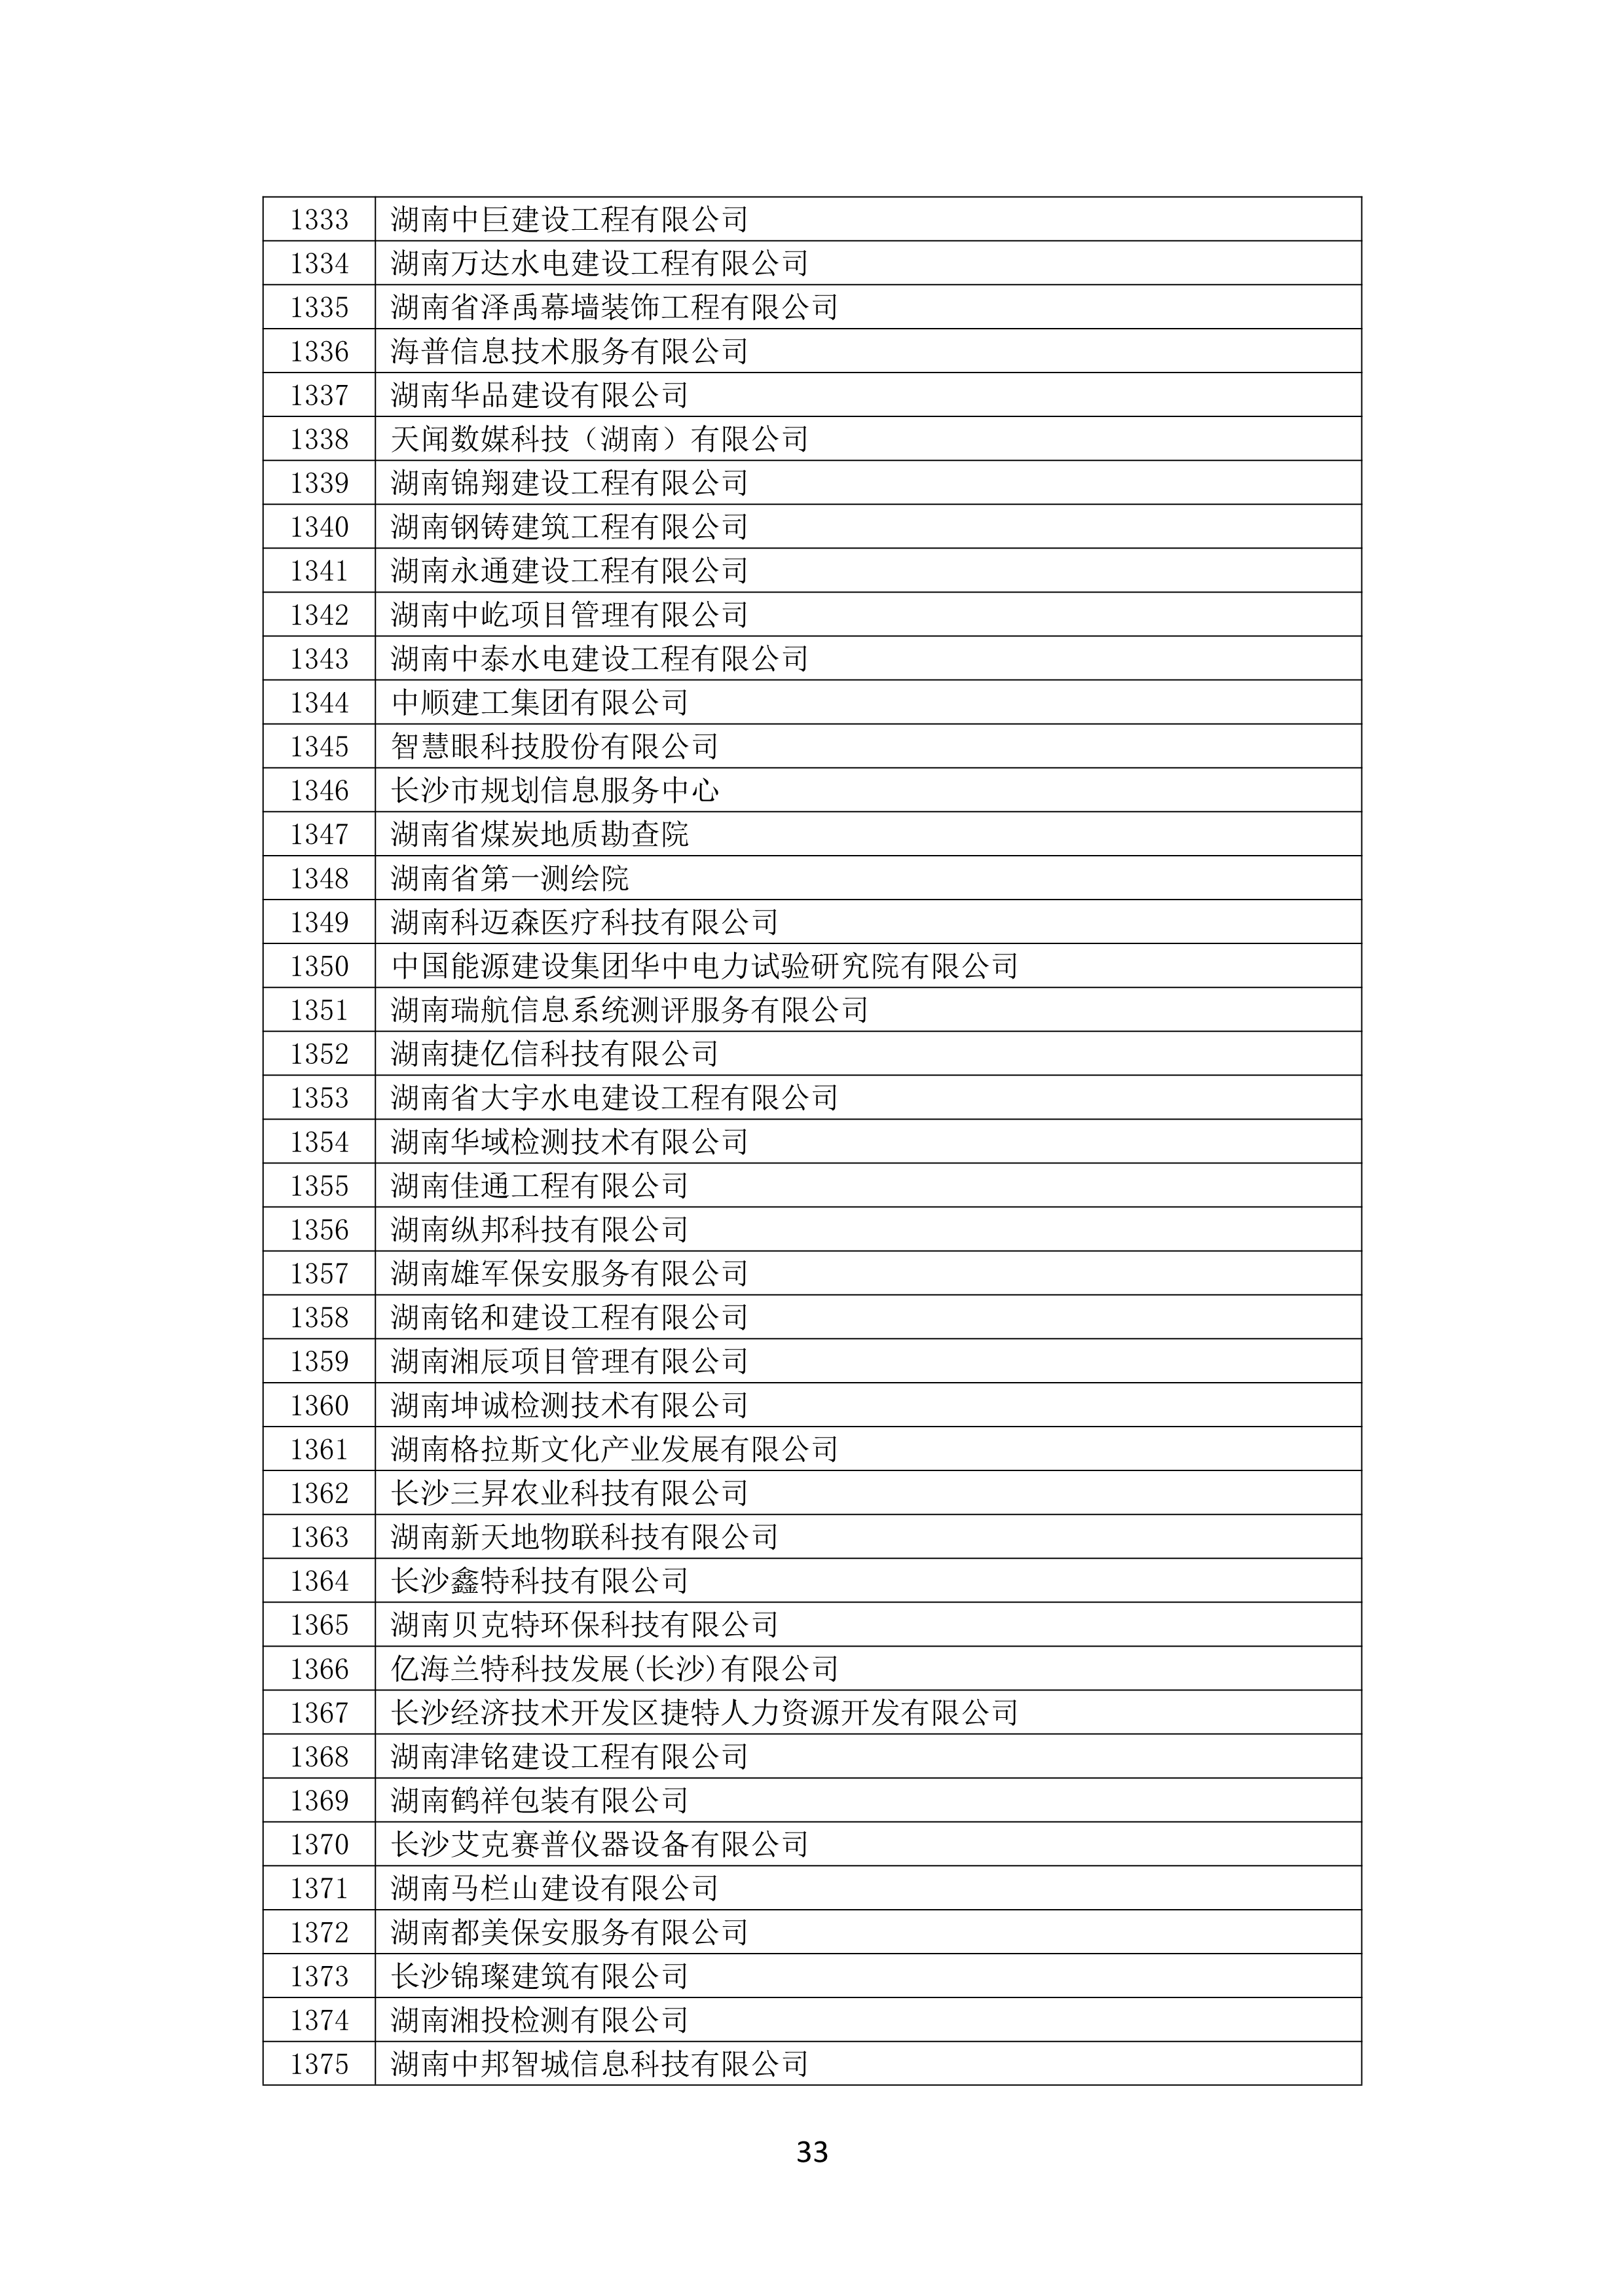 2021 年(nián)度湖南省守合同重信用企業名單_34.png